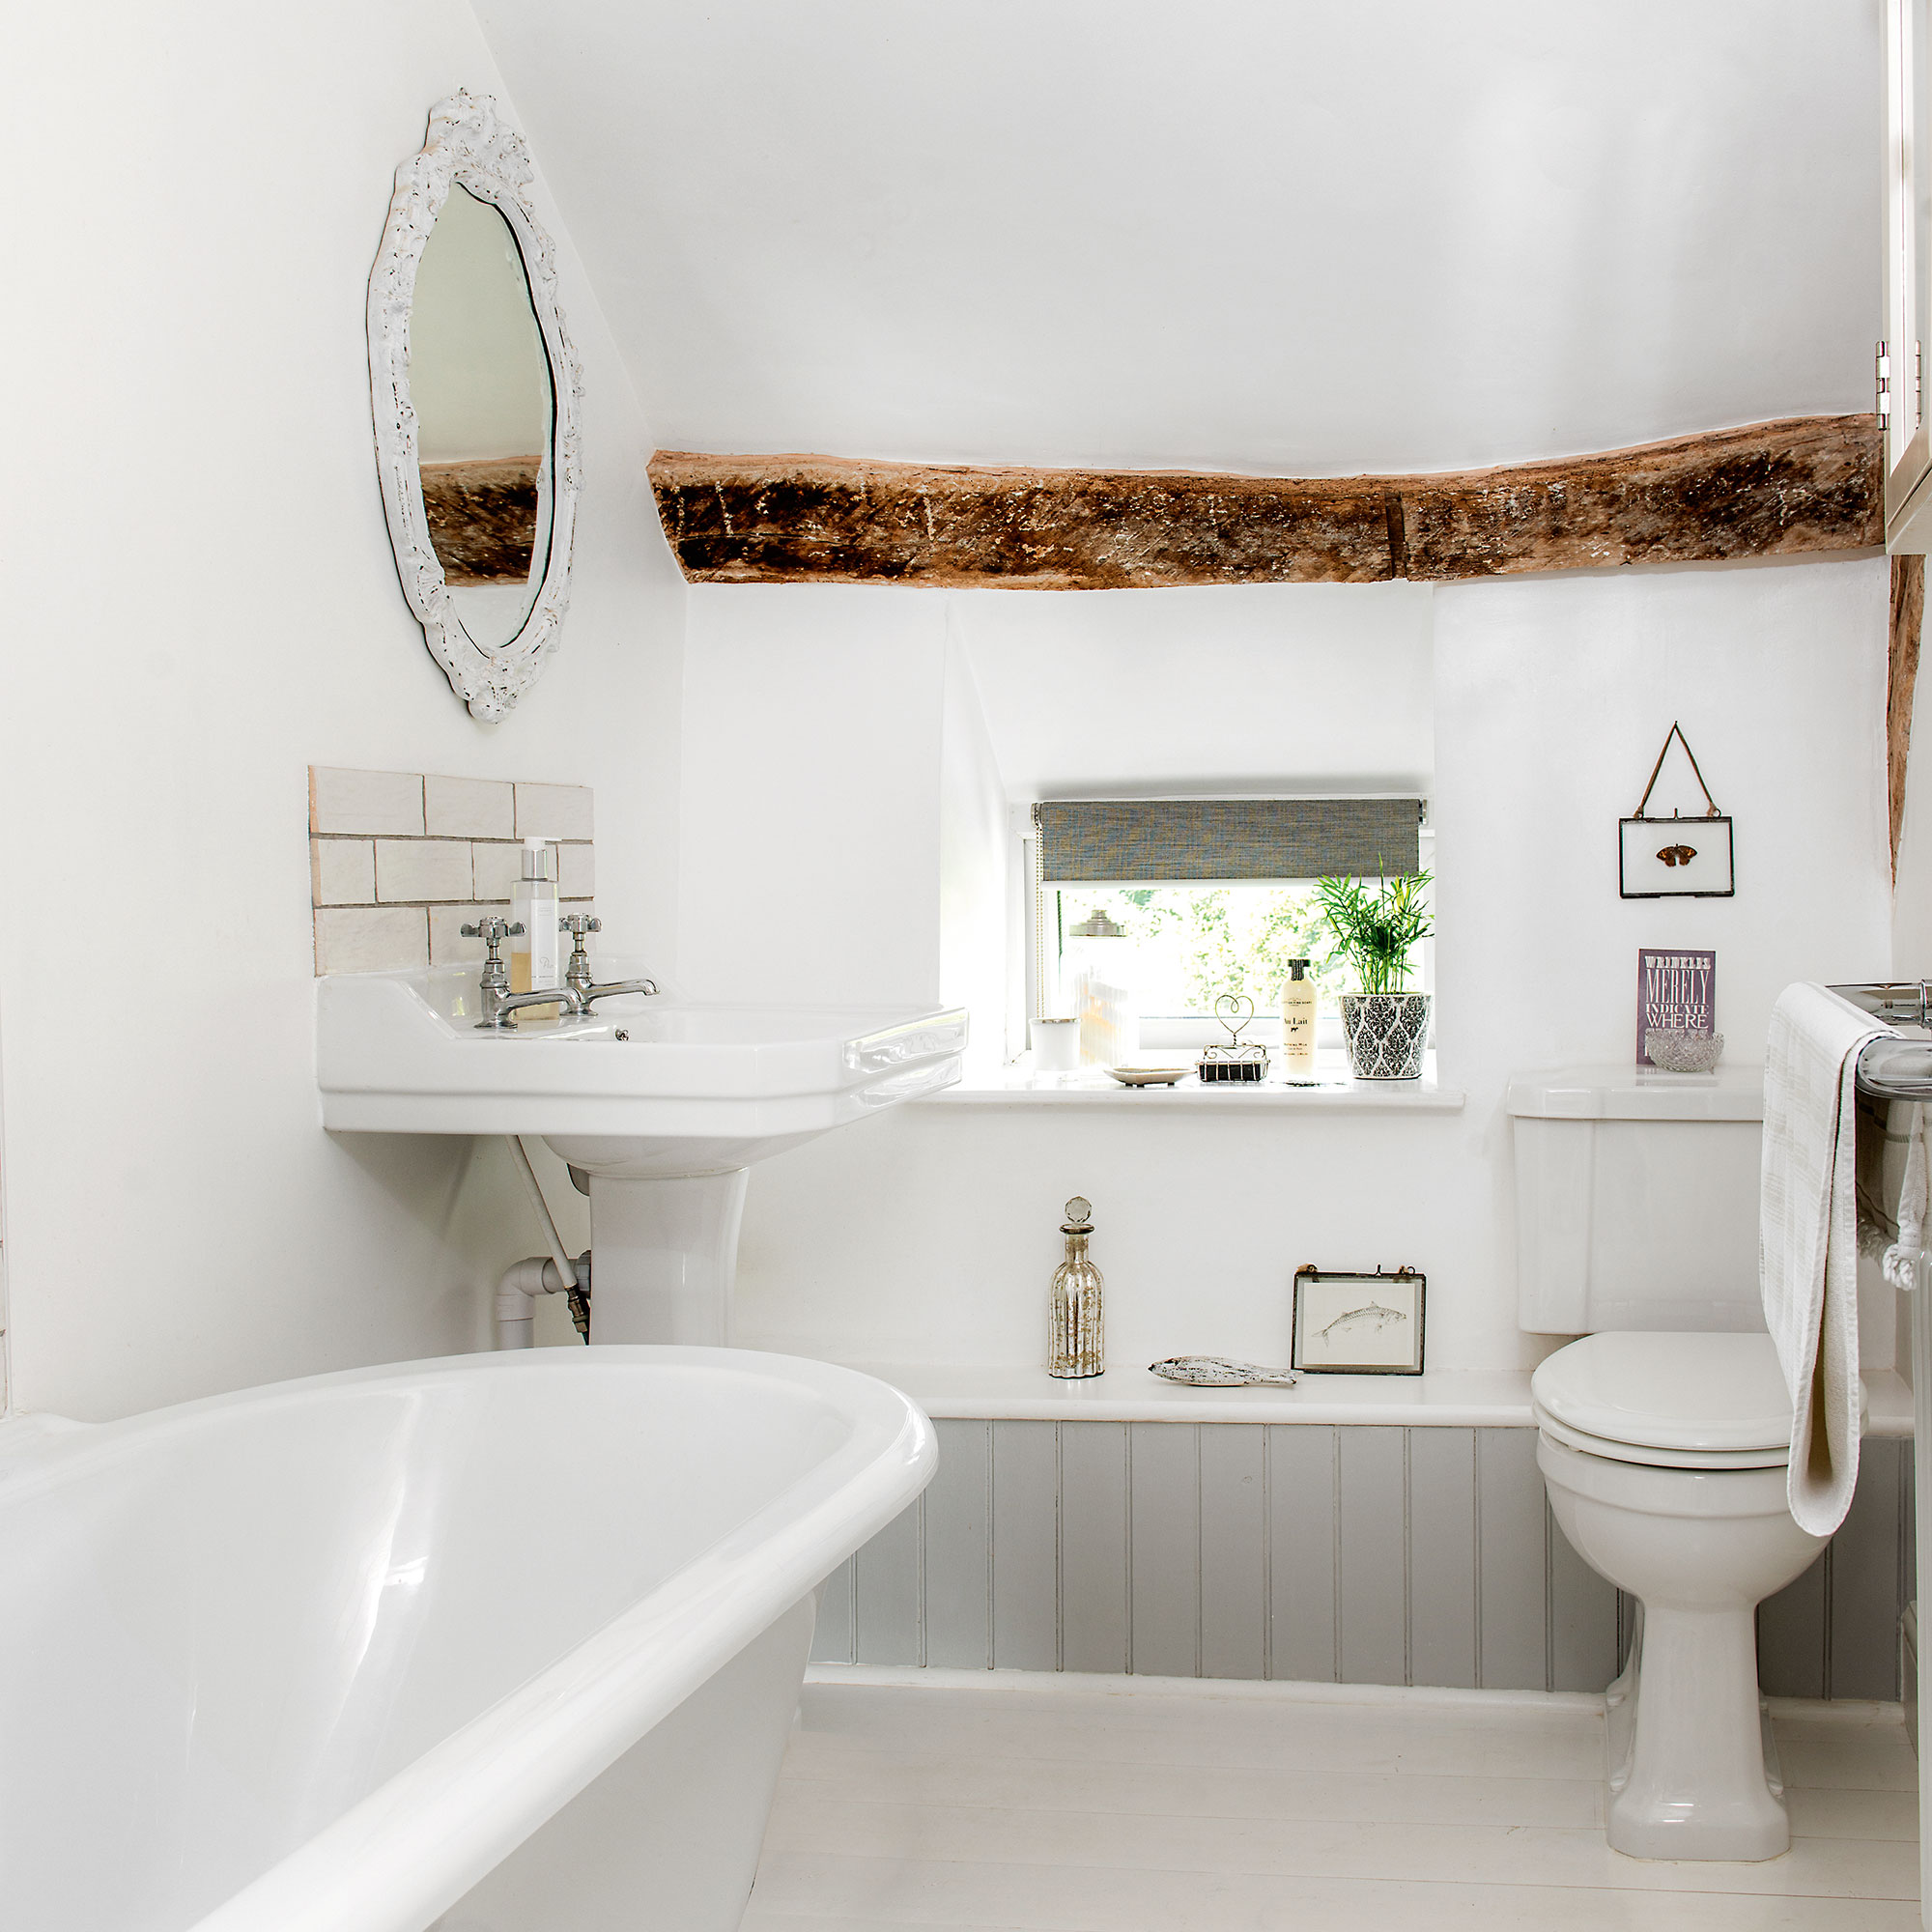 Kamar mandi putih dengan bathtub berdiri sendiri dan langit-langit balok kayu